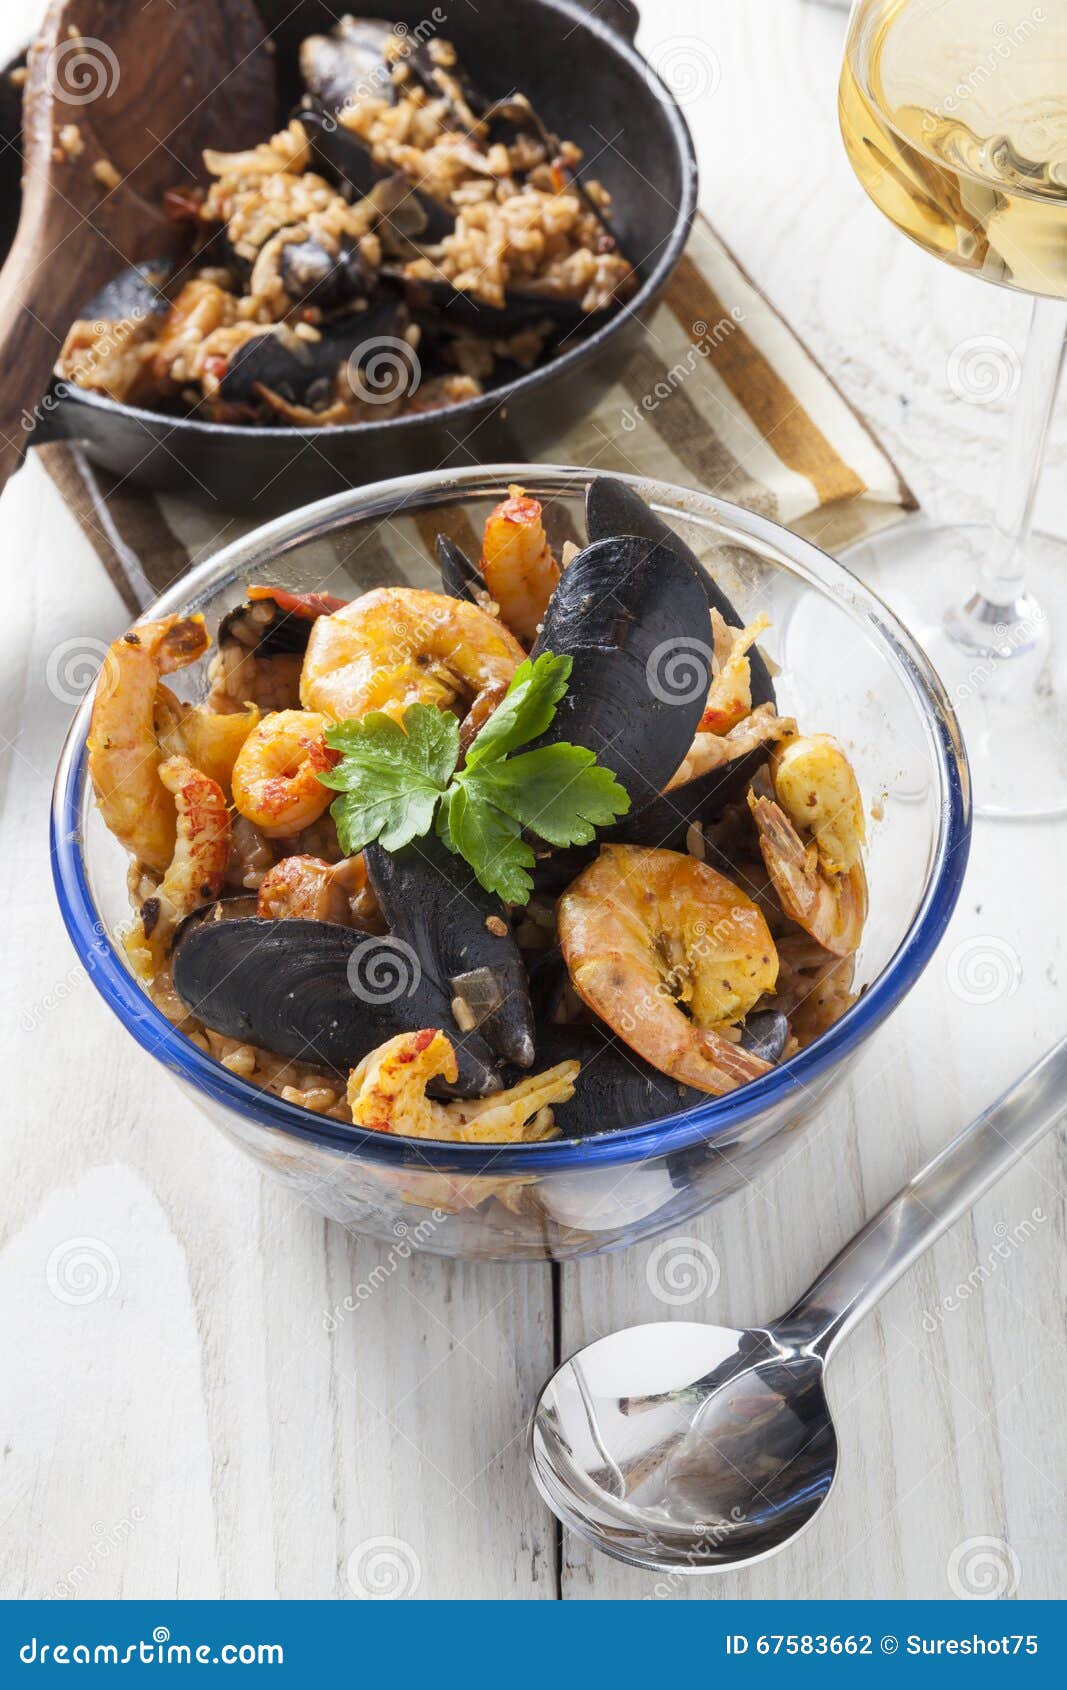 arroz de marisco portugese paella seafood rustic rice summer dish